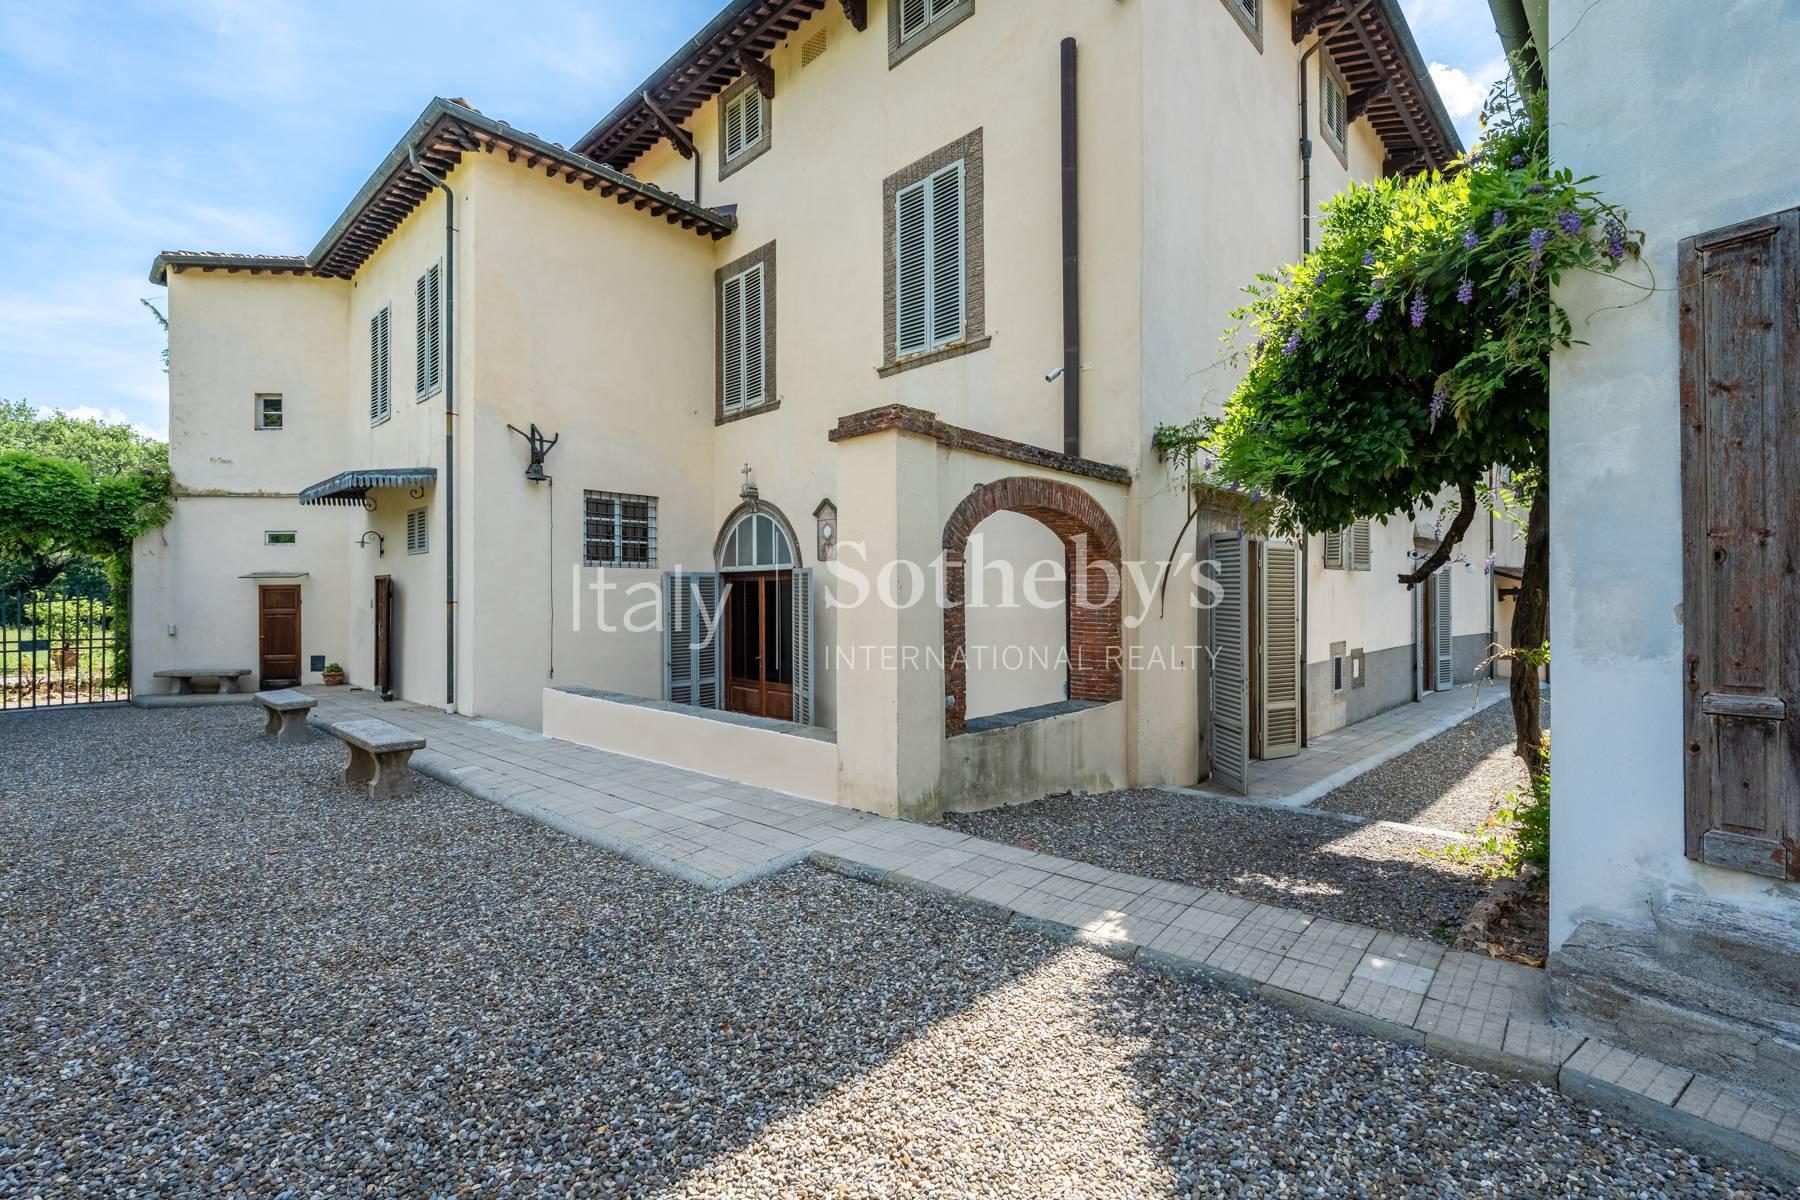 Incantevole villa settecentesca nei pressi di Lucca - 4